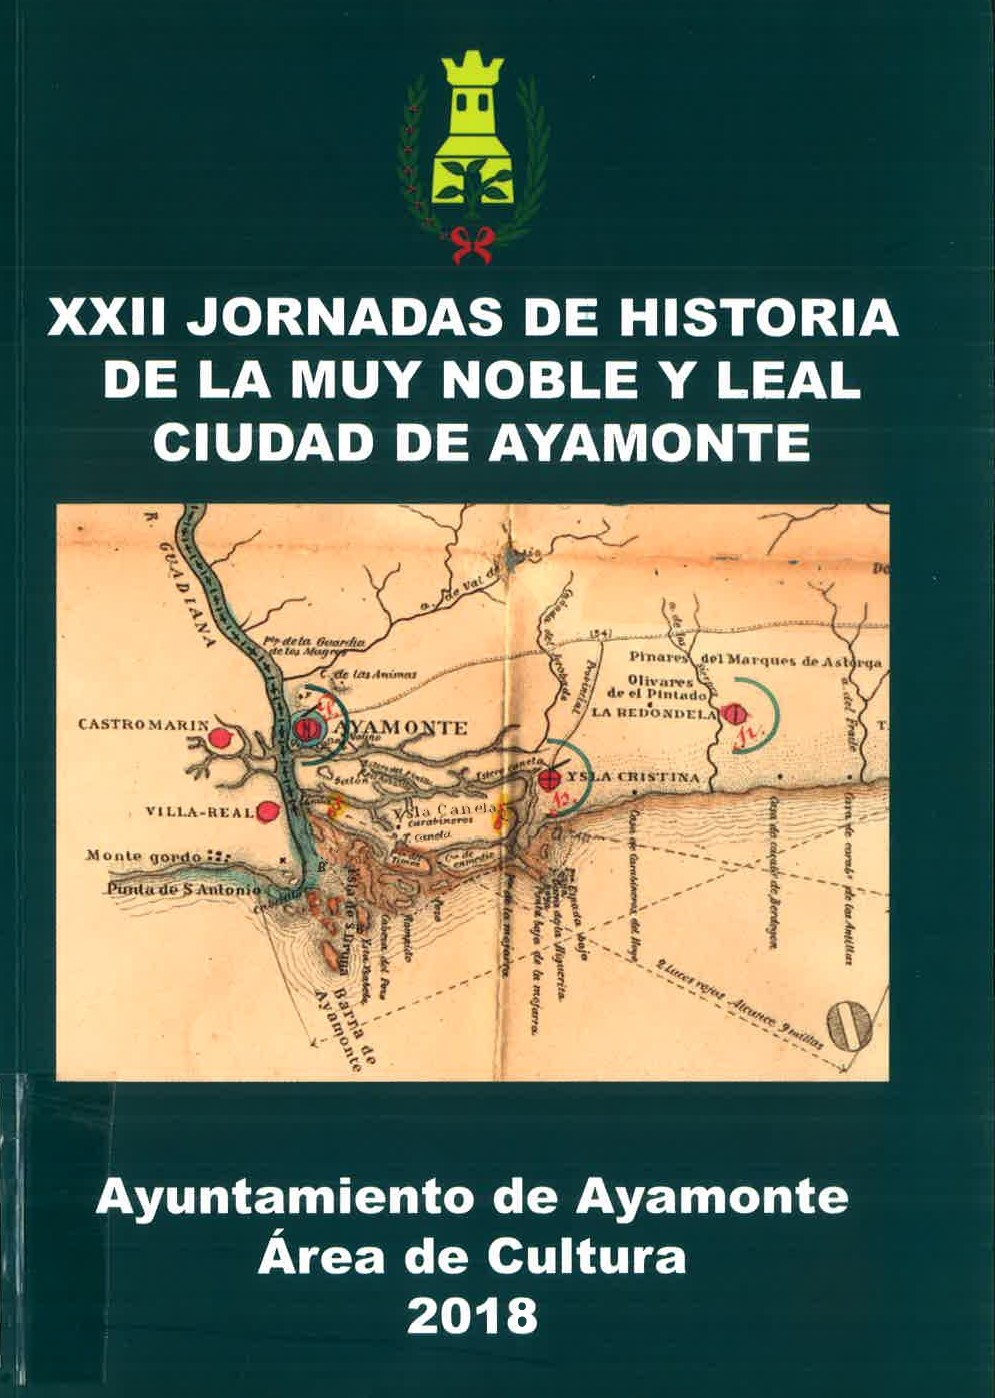 Imagen de portada del libro XXII Jornadas de Historia de Ayamonte